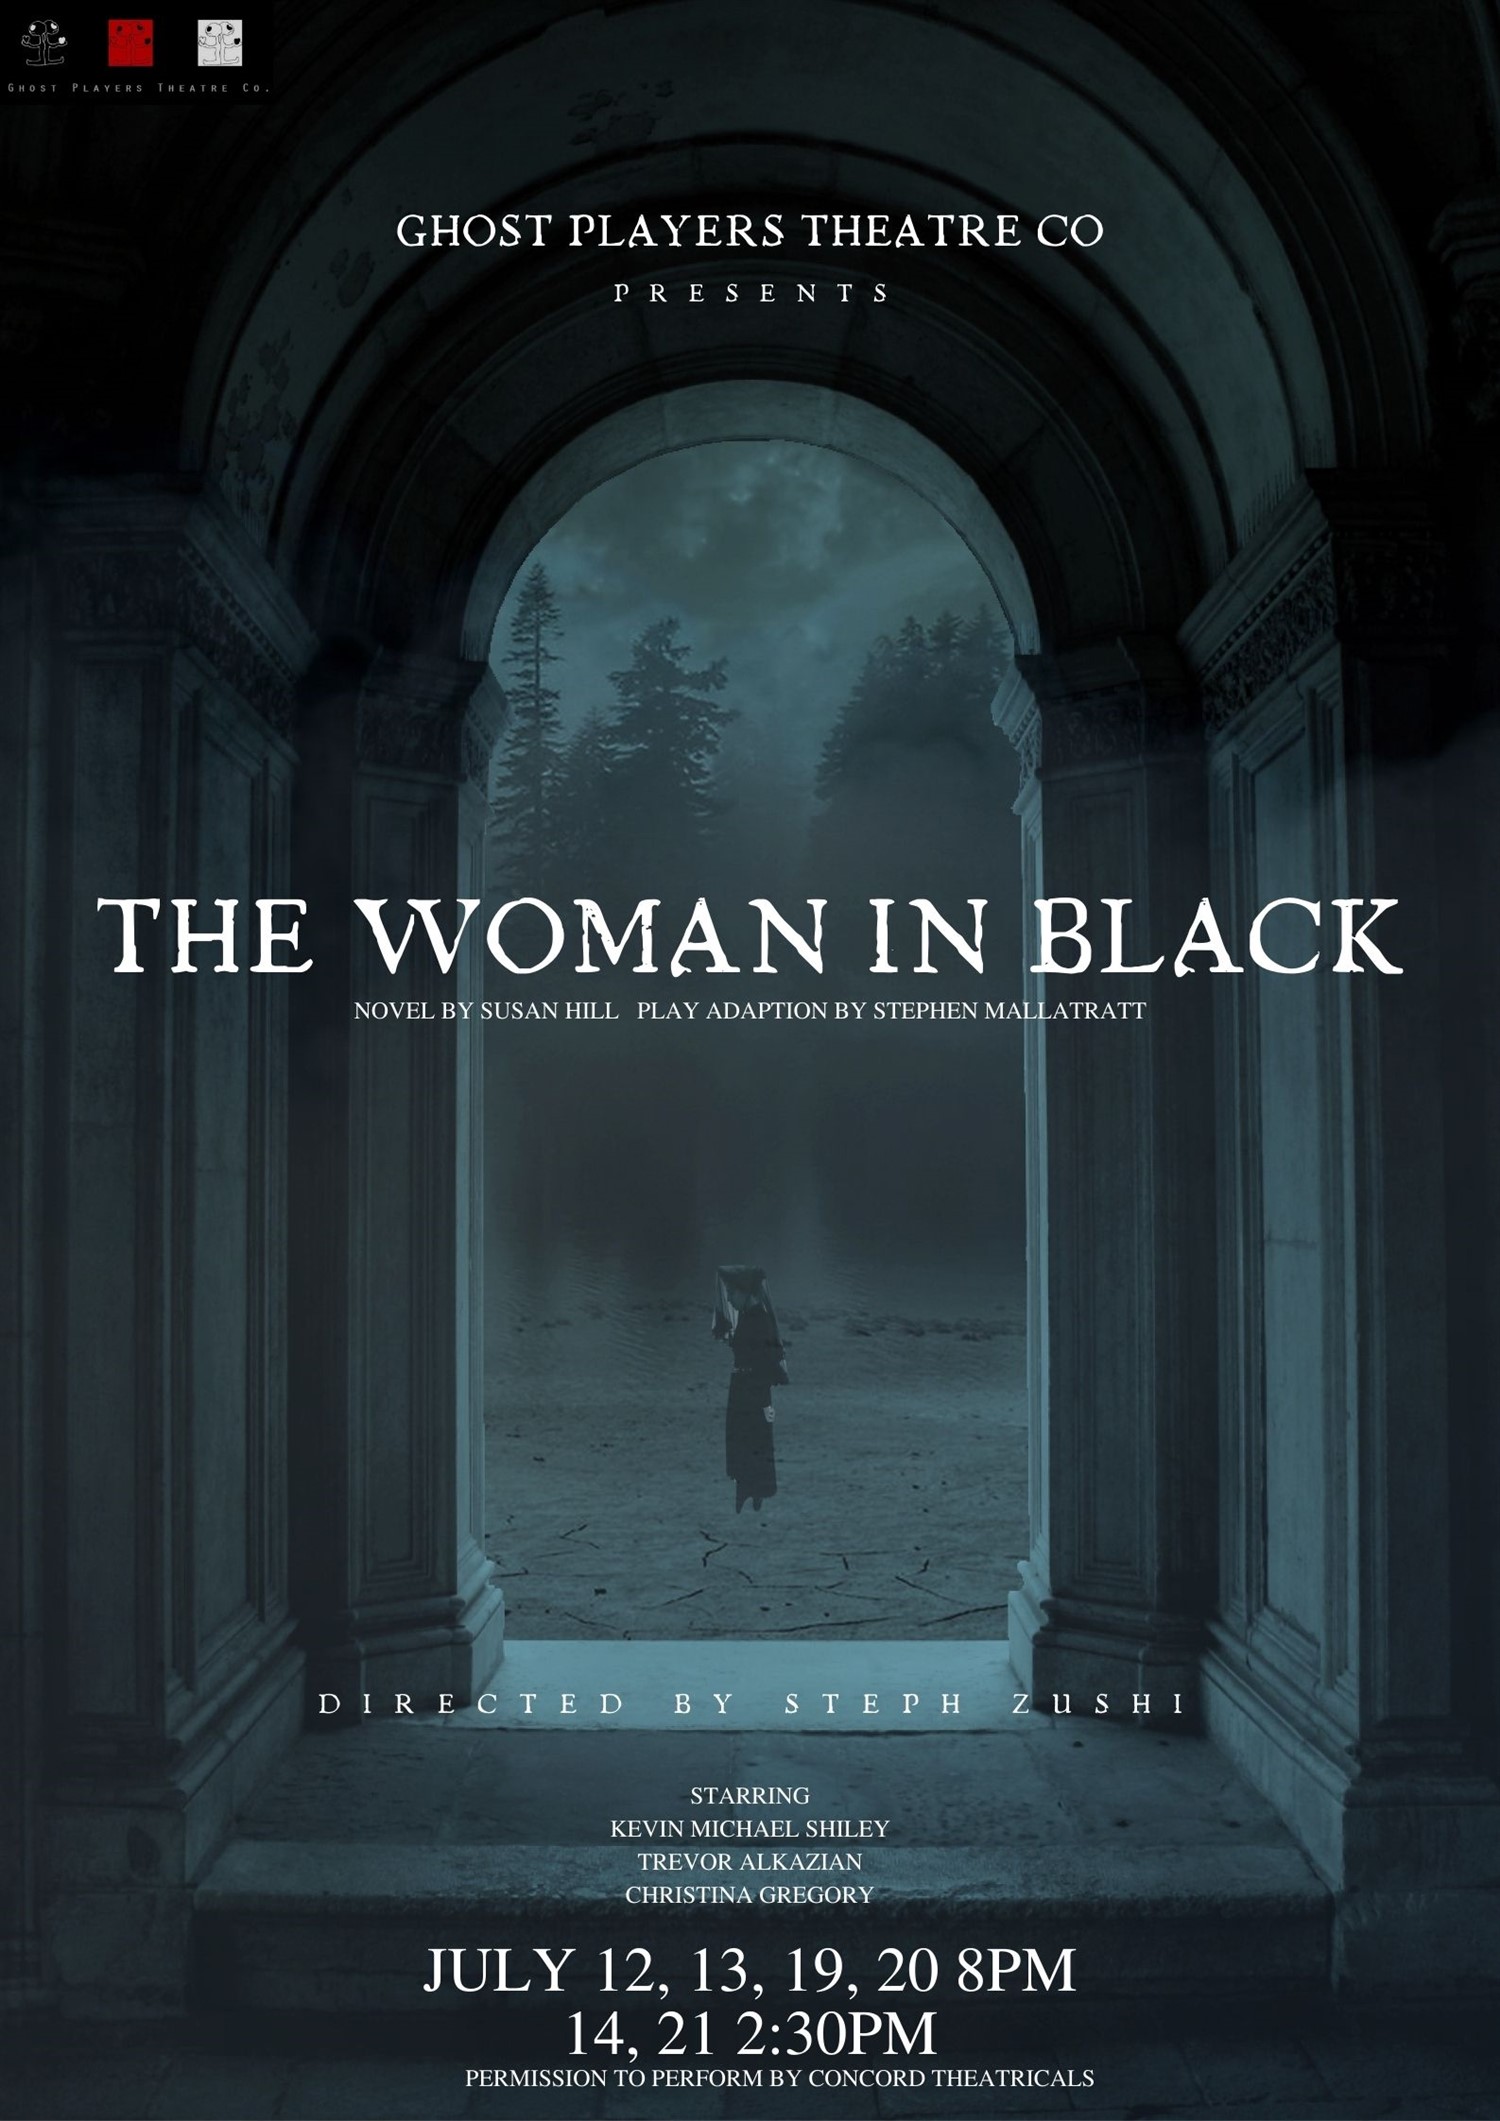 THE WOMAN IN BLACK Presented by Ghost Players Theatre Co. on juil. 23, 00:00@Alemany Theater - Choisissez un siège,Achetez des billets et obtenez des informations surGHOST PLAYERS THEATRE CO 